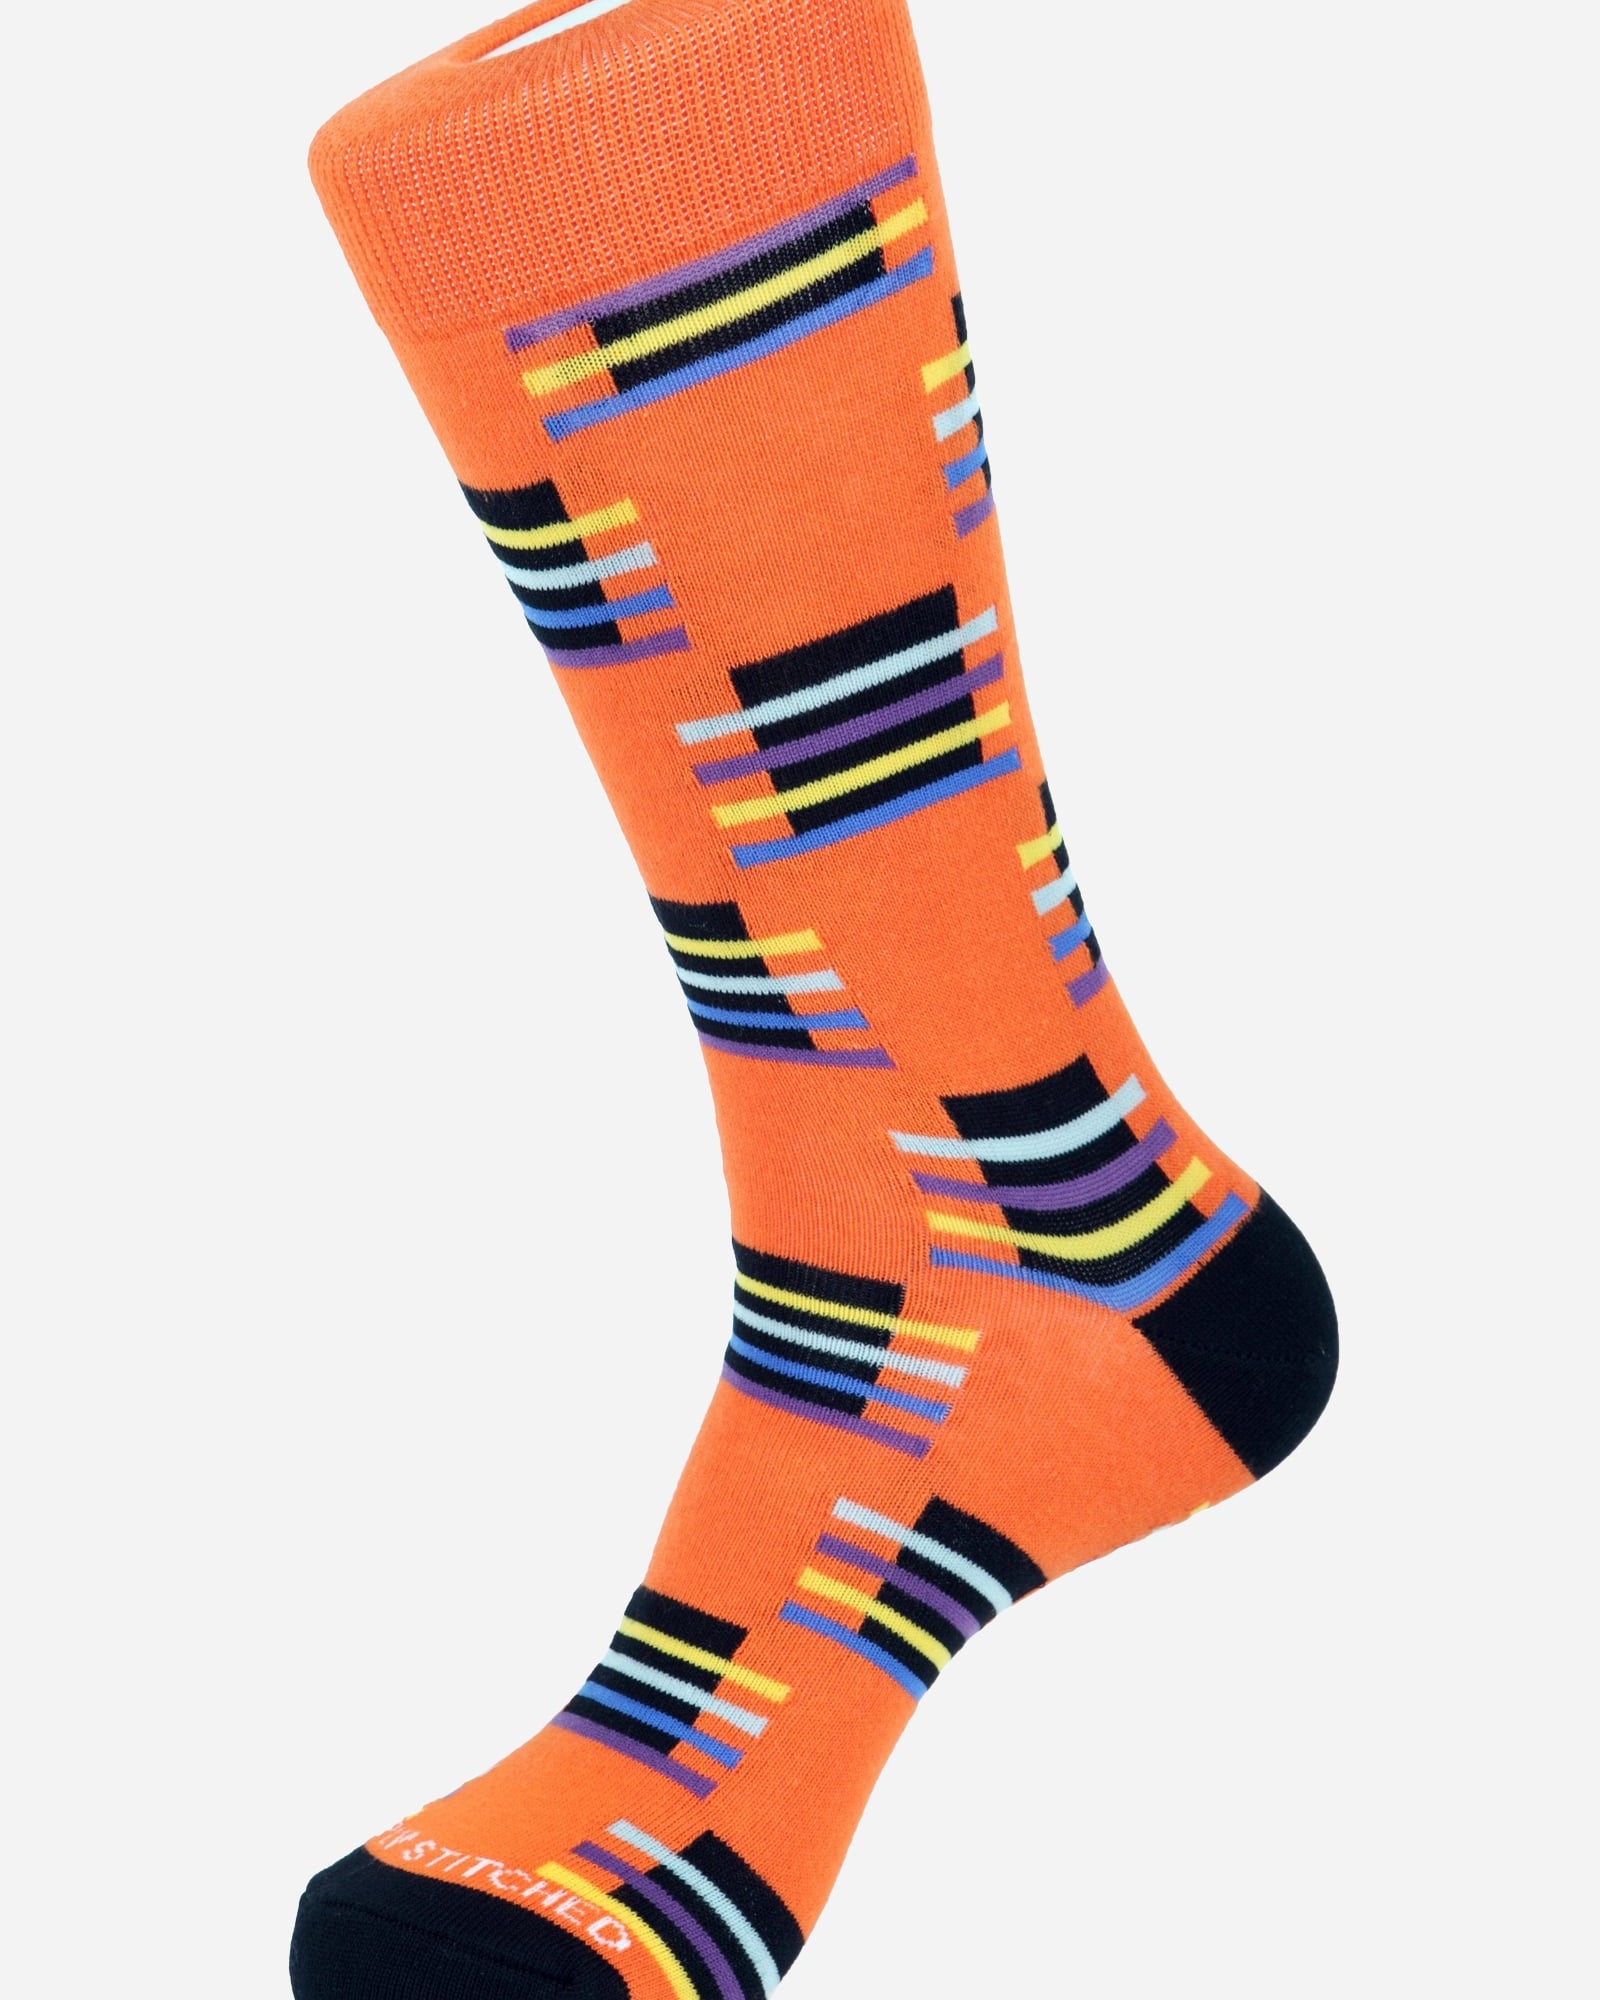 Block Stripe Socks - Men's Socks at Menzclub